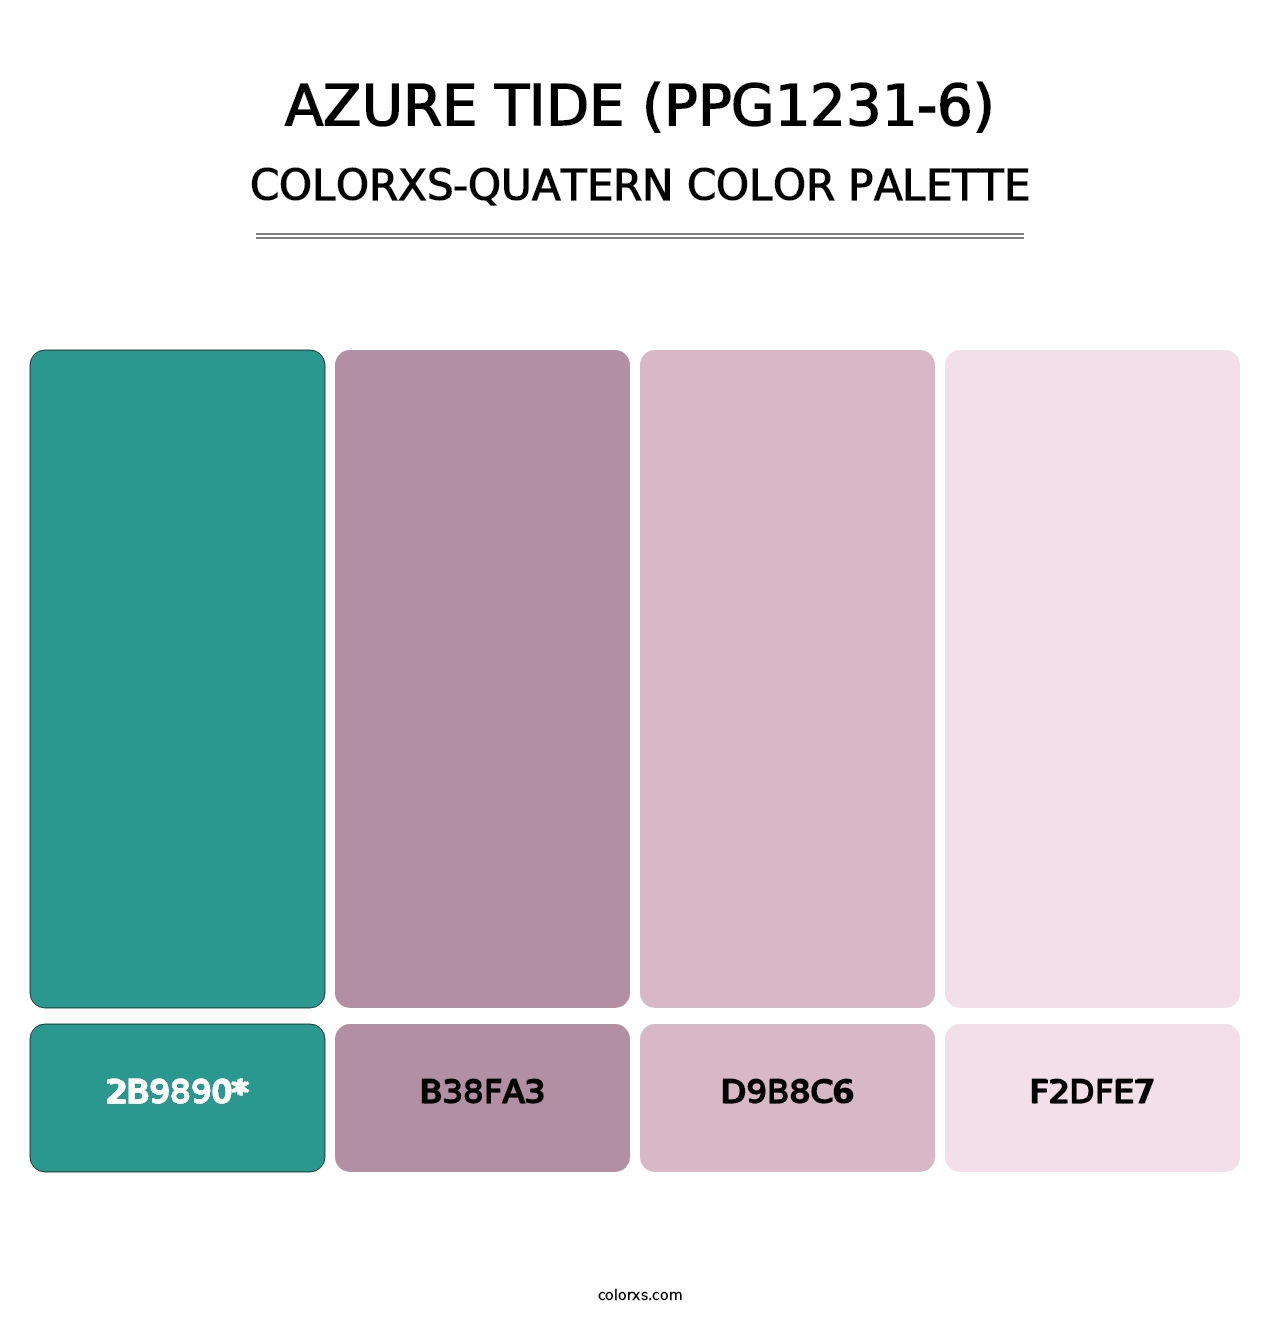 Azure Tide (PPG1231-6) - Colorxs Quatern Palette